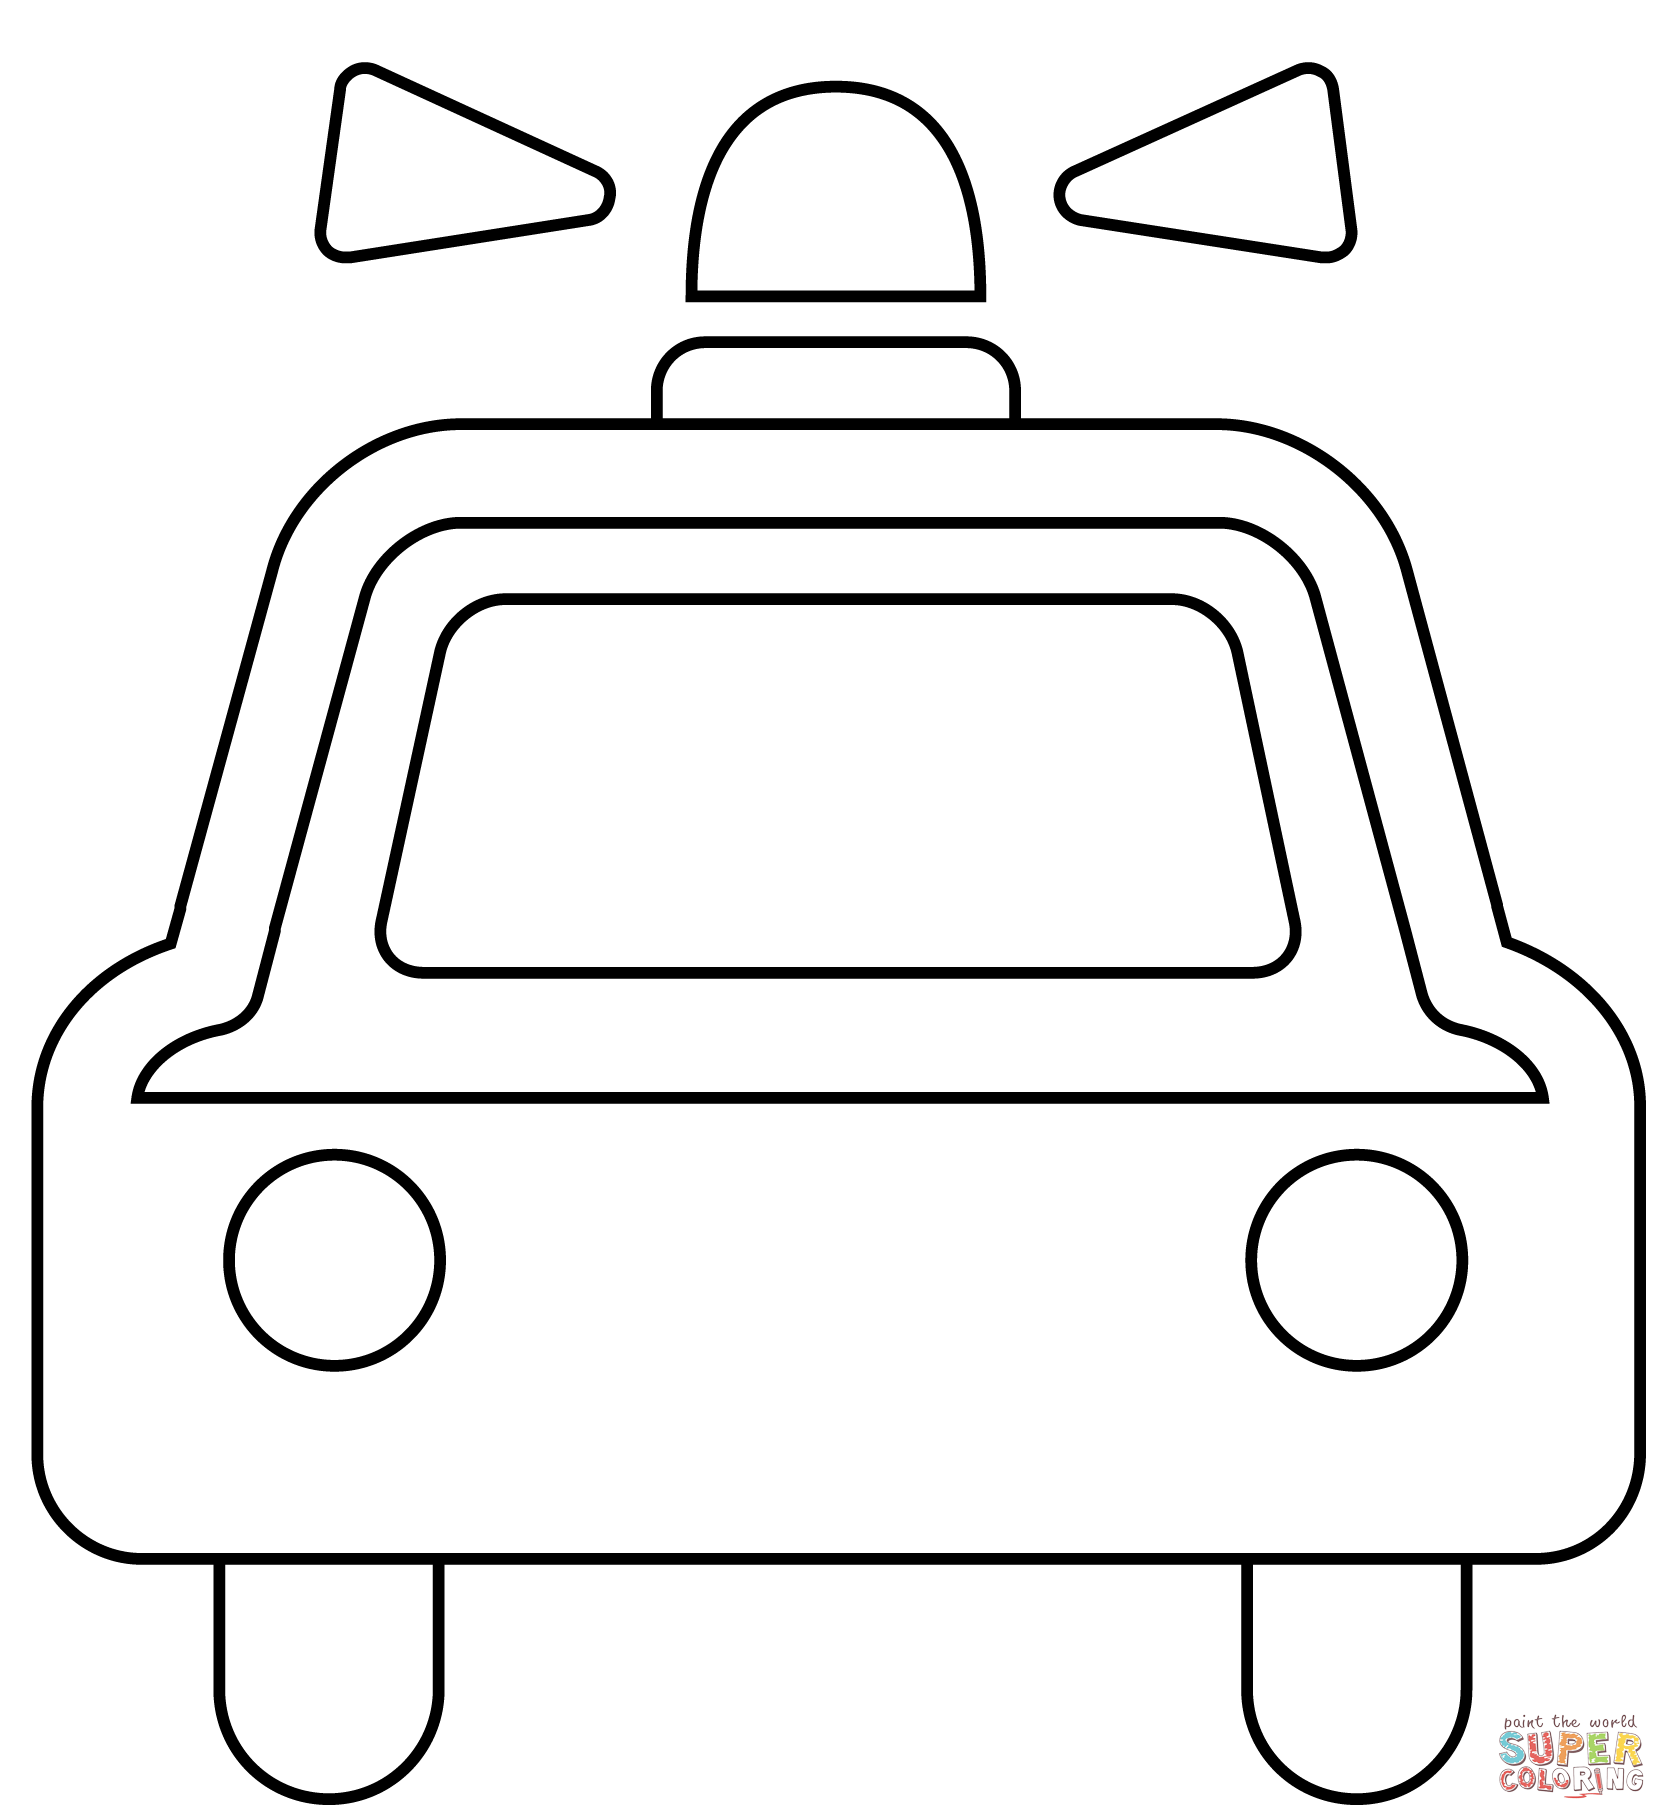 Dibujo de emoji de coche de policãa que se aproxima para colorear dibujos para colorear imprimir gratis